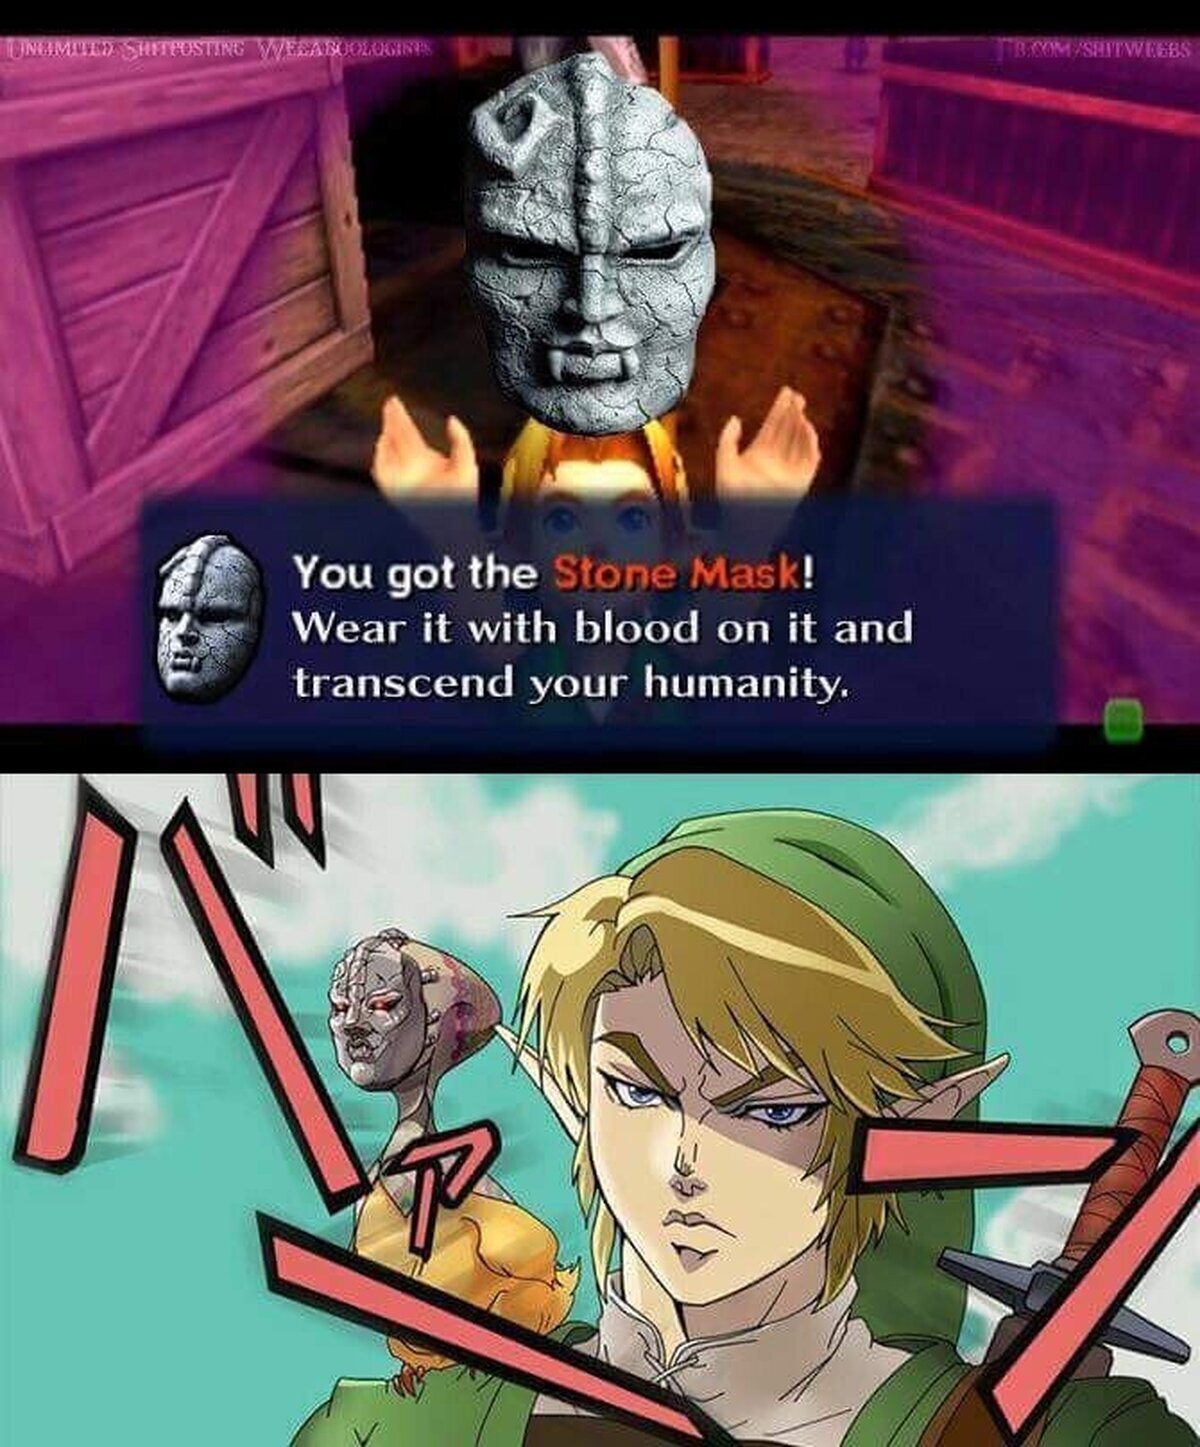 Creo que Link tomo la máscara de piedra equivocada